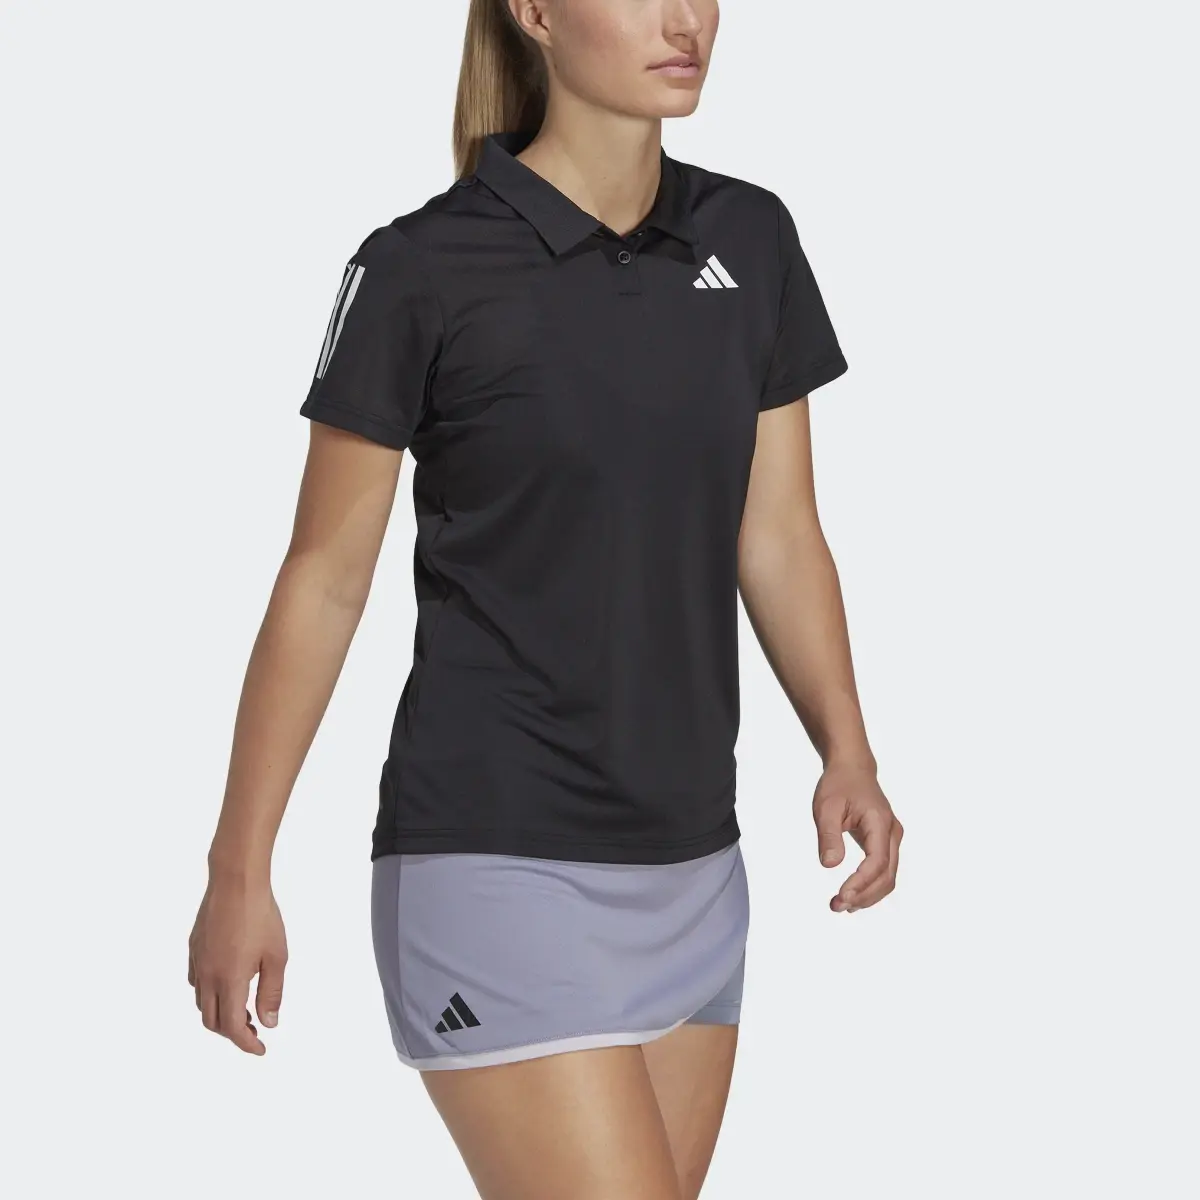 Adidas Club Tennis Polo Shirt. 1